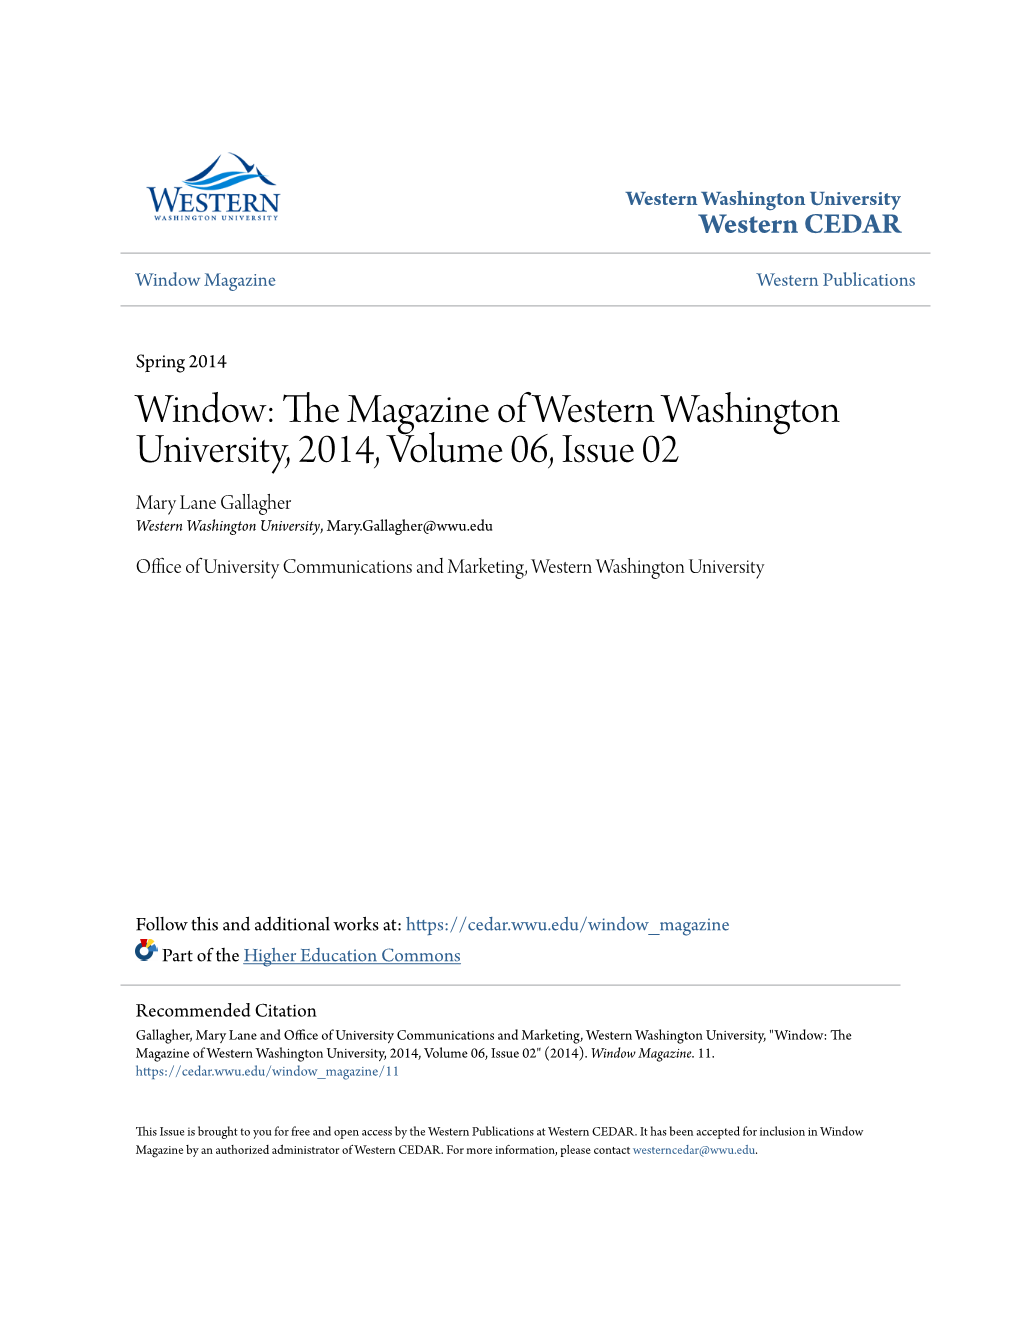 Window: the Magazine of Western Washington University, 2014, Volume 06, Issue 02" (2014)